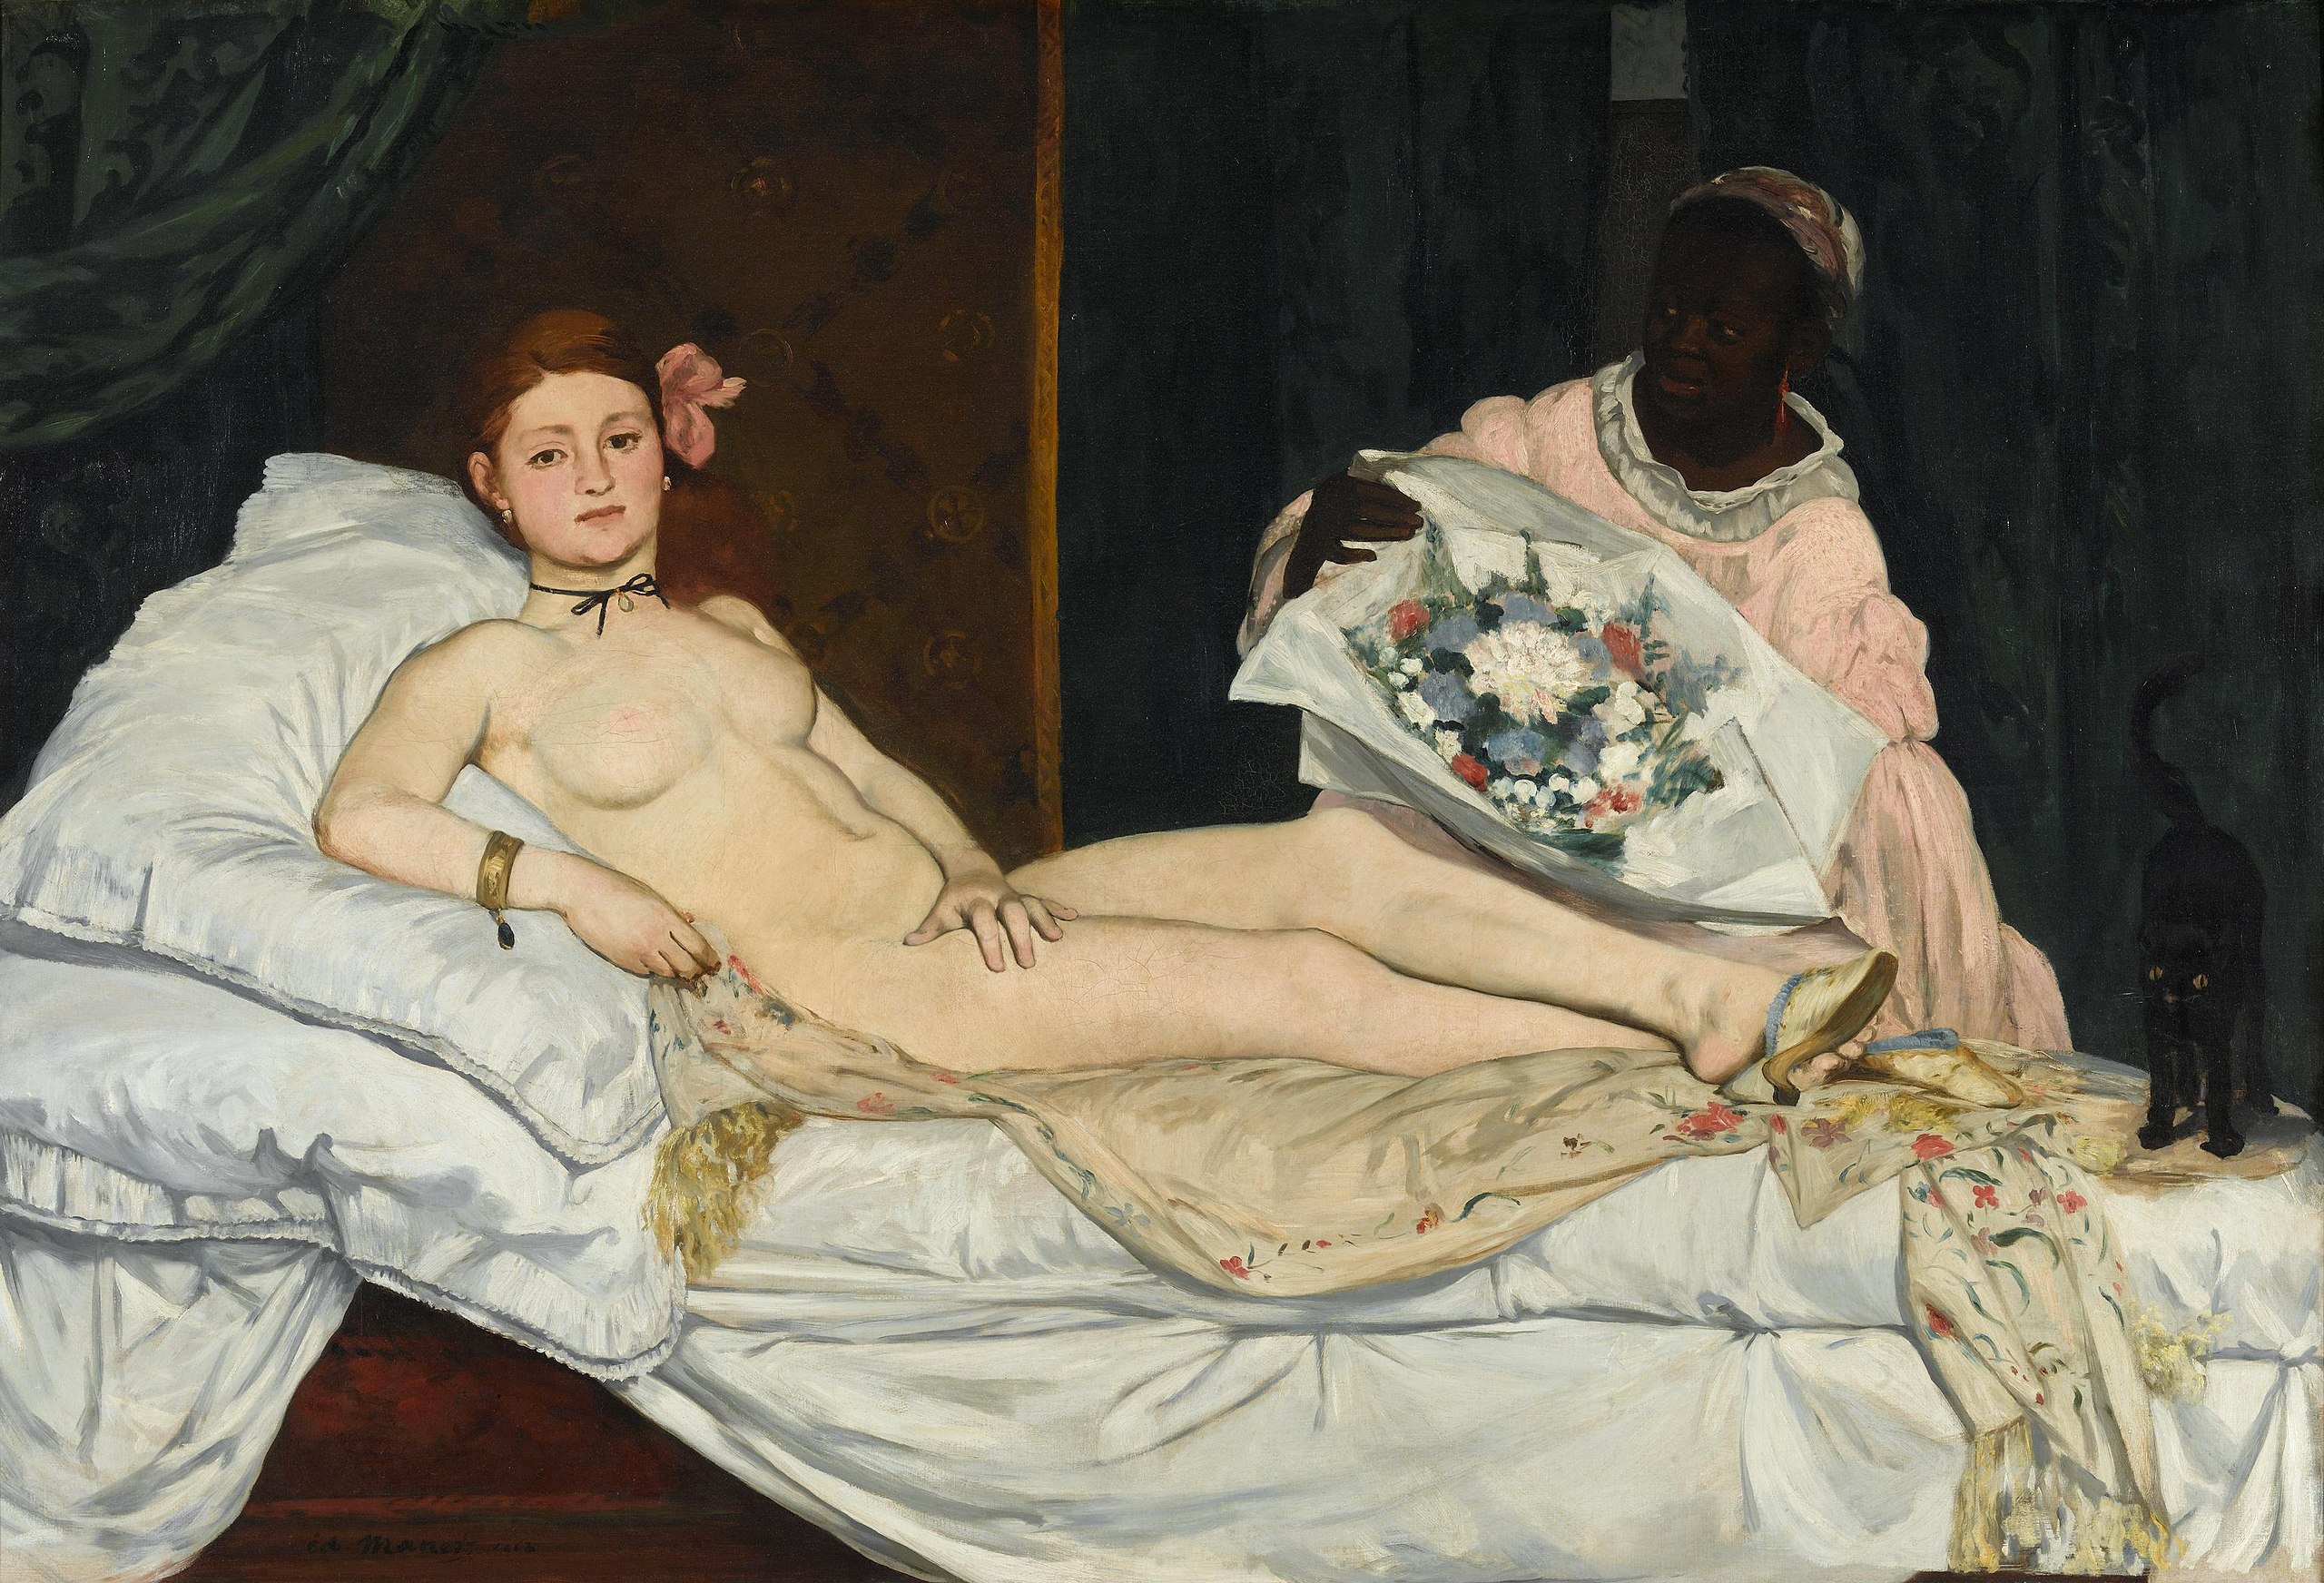 Олимпия by Édouard Manet - 1863 - 190 x 130 см 